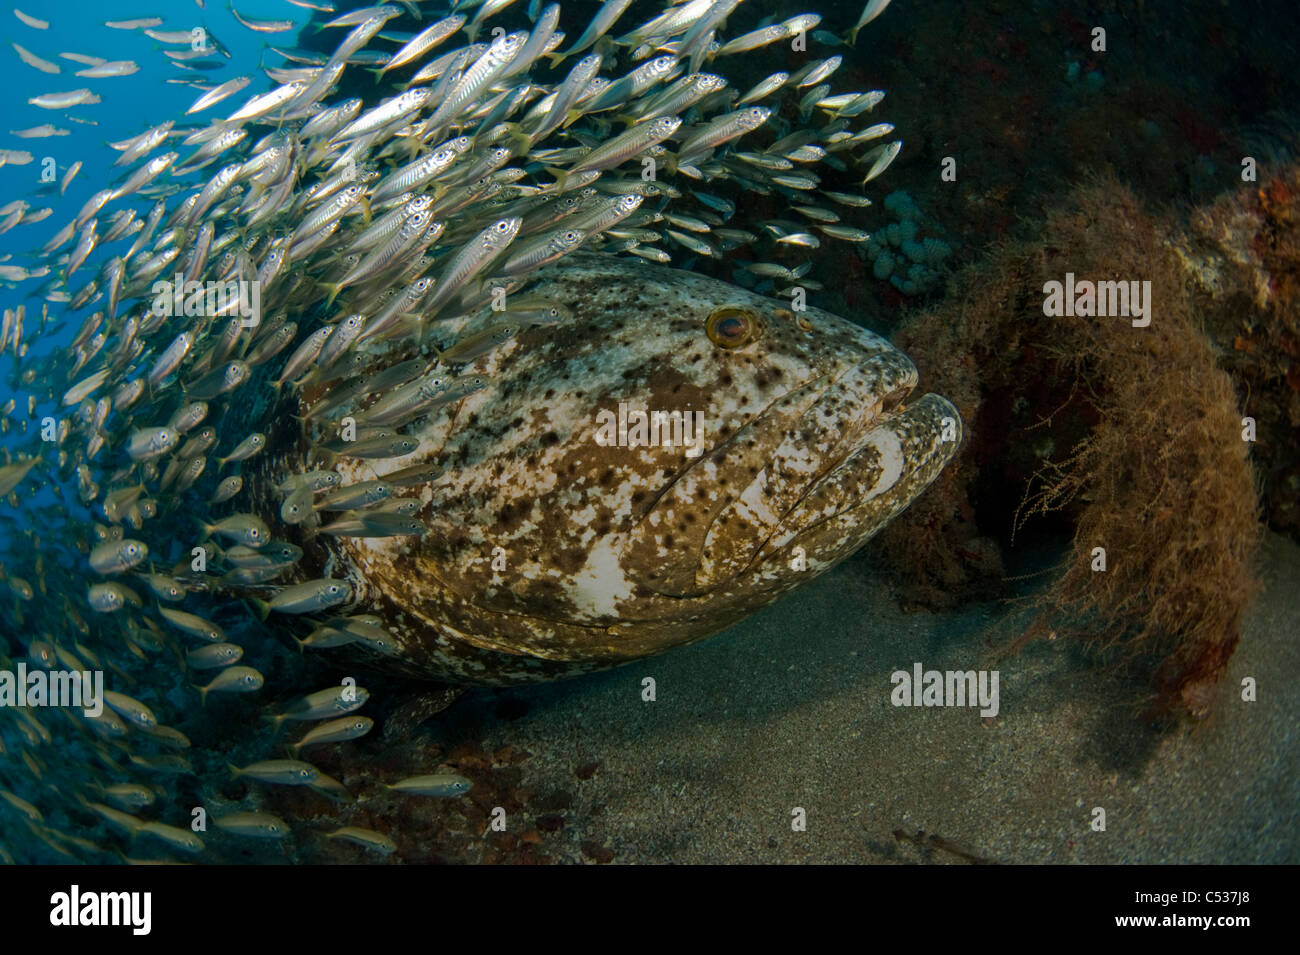 Goliath le mérou Epinephelus itajara photographié au large sous-marine Palm Beach, en Floride pendant la saison de frai. En voie de disparition Banque D'Images